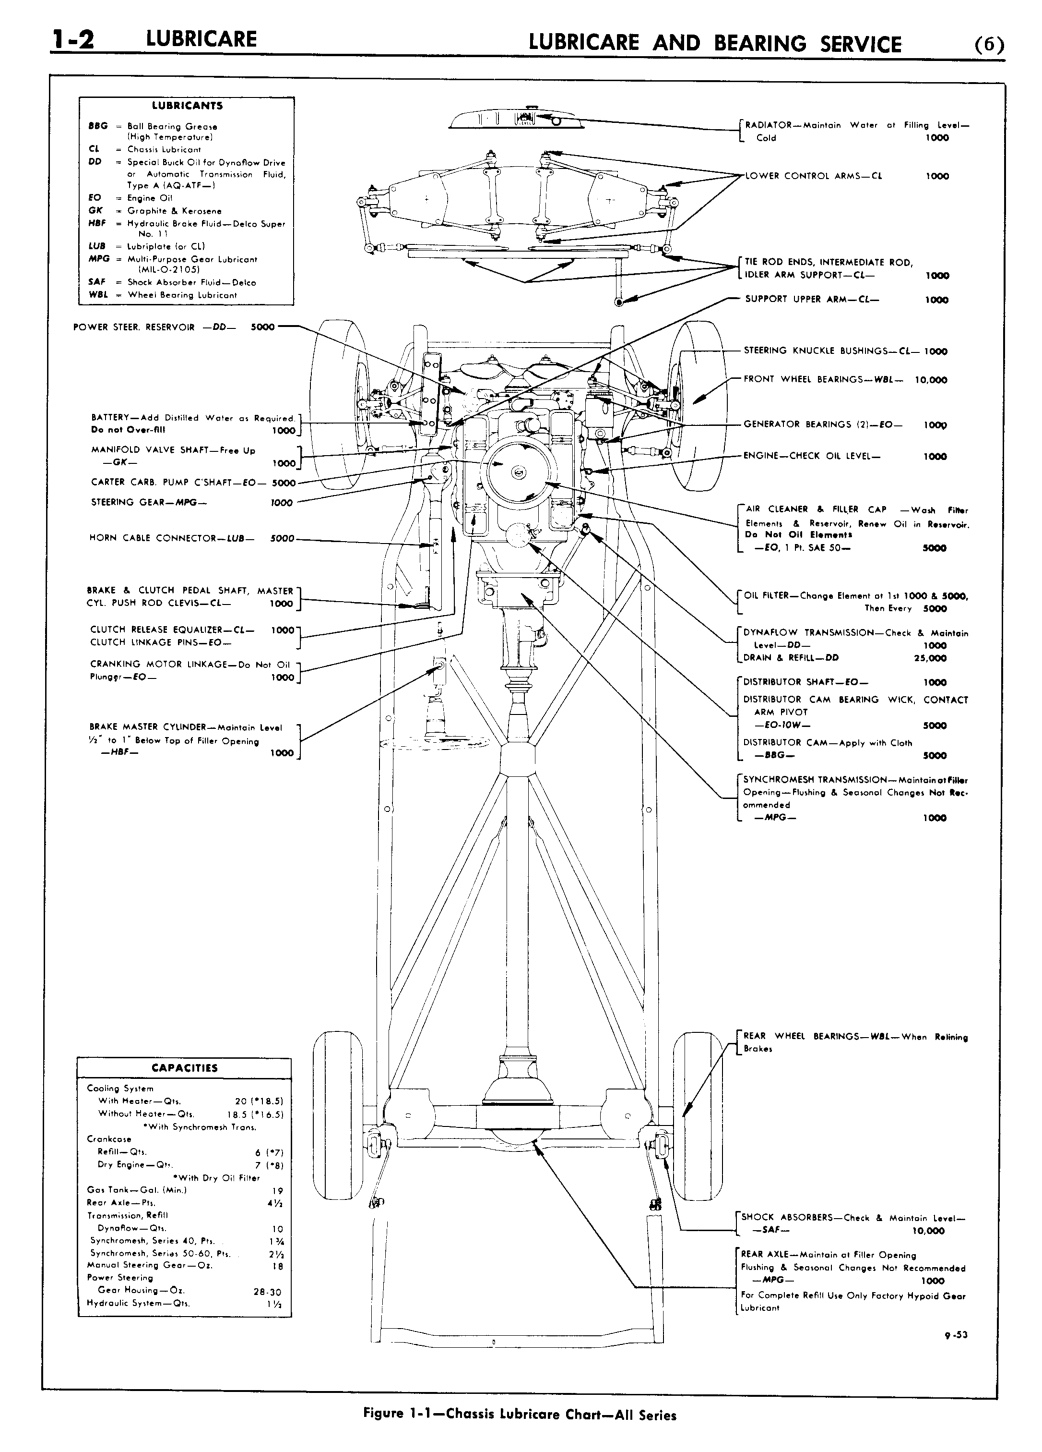 n_02 1954 Buick Shop Manual - Lubricare-002-002.jpg